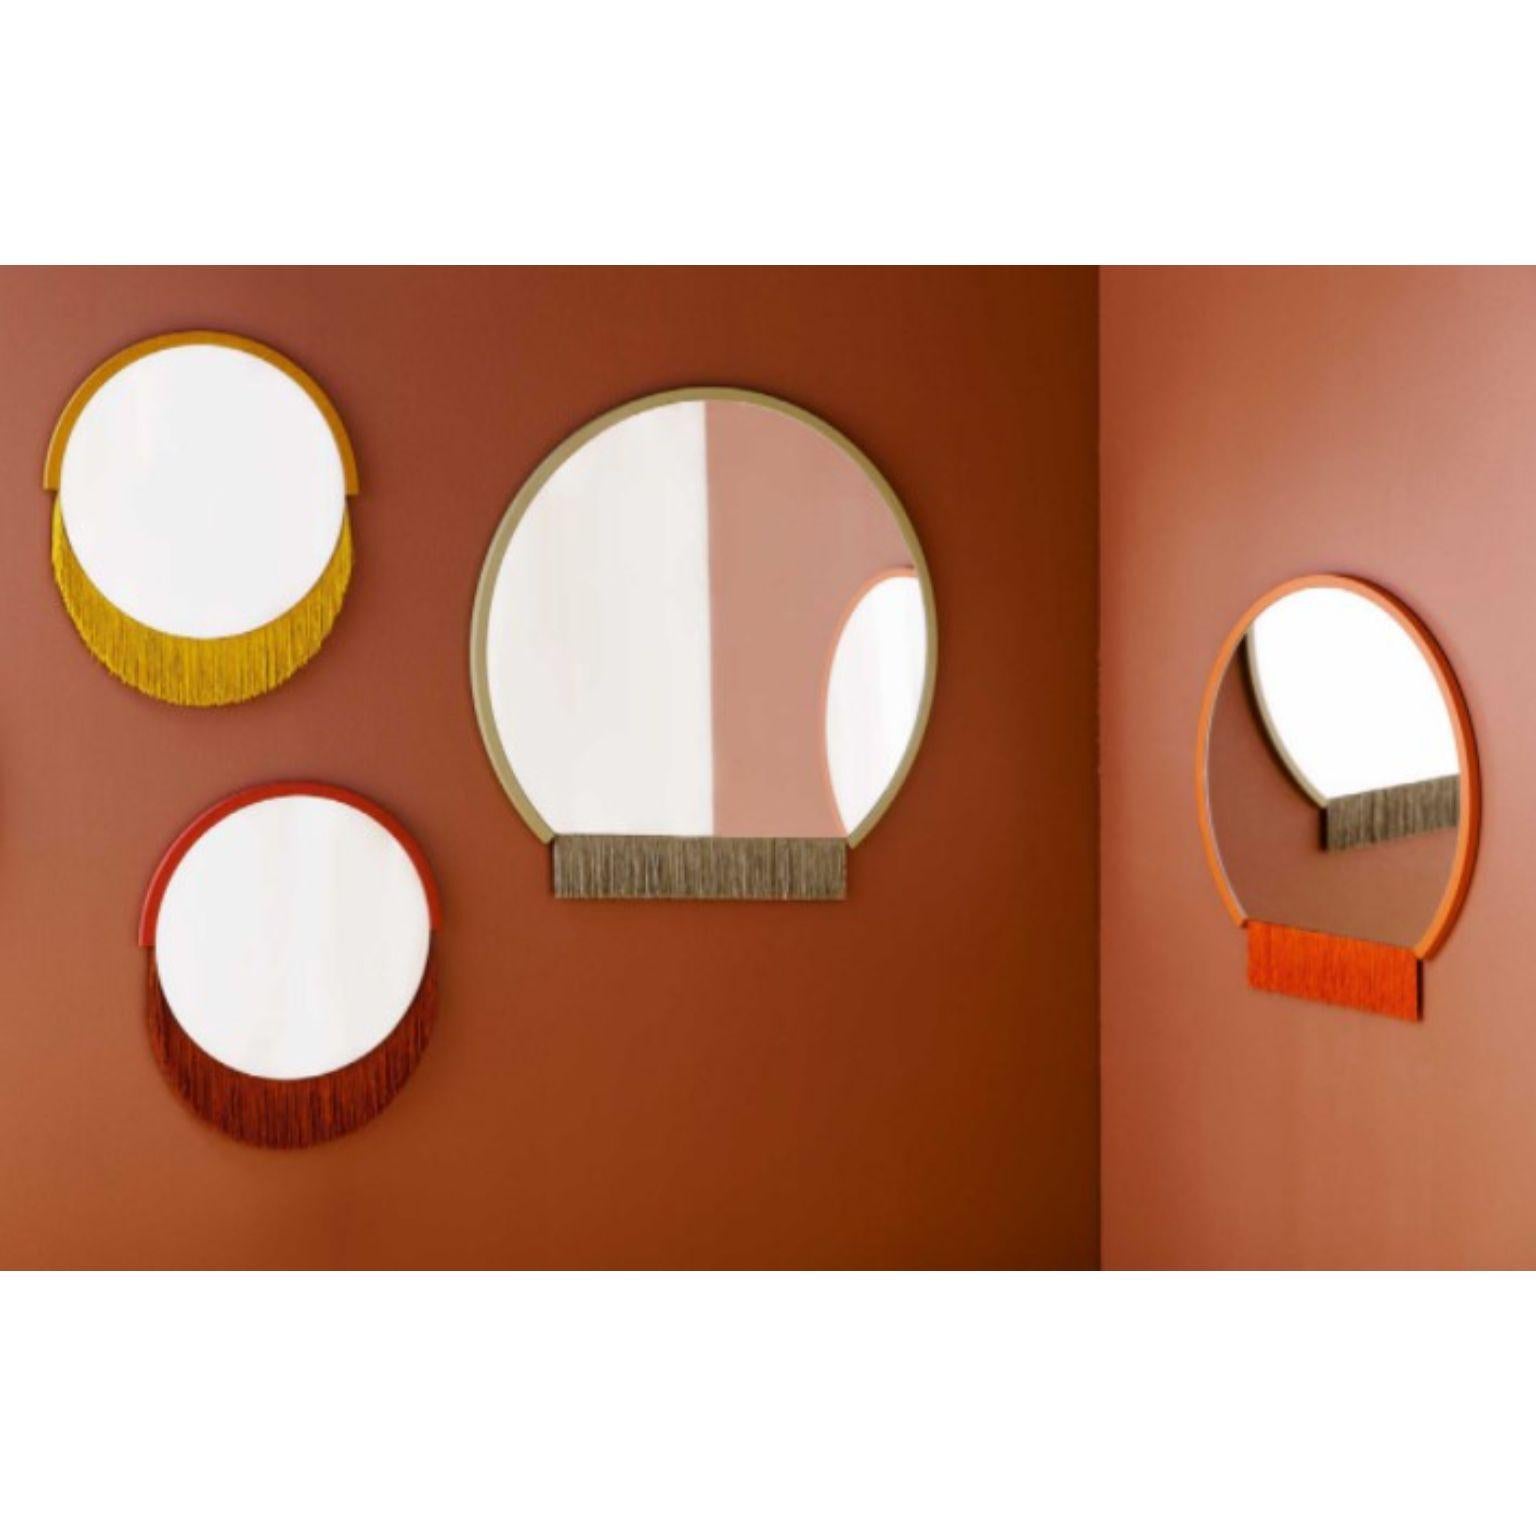 Finnish Boudoir Medium Wall Mirror by Tero Kuitunen For Sale